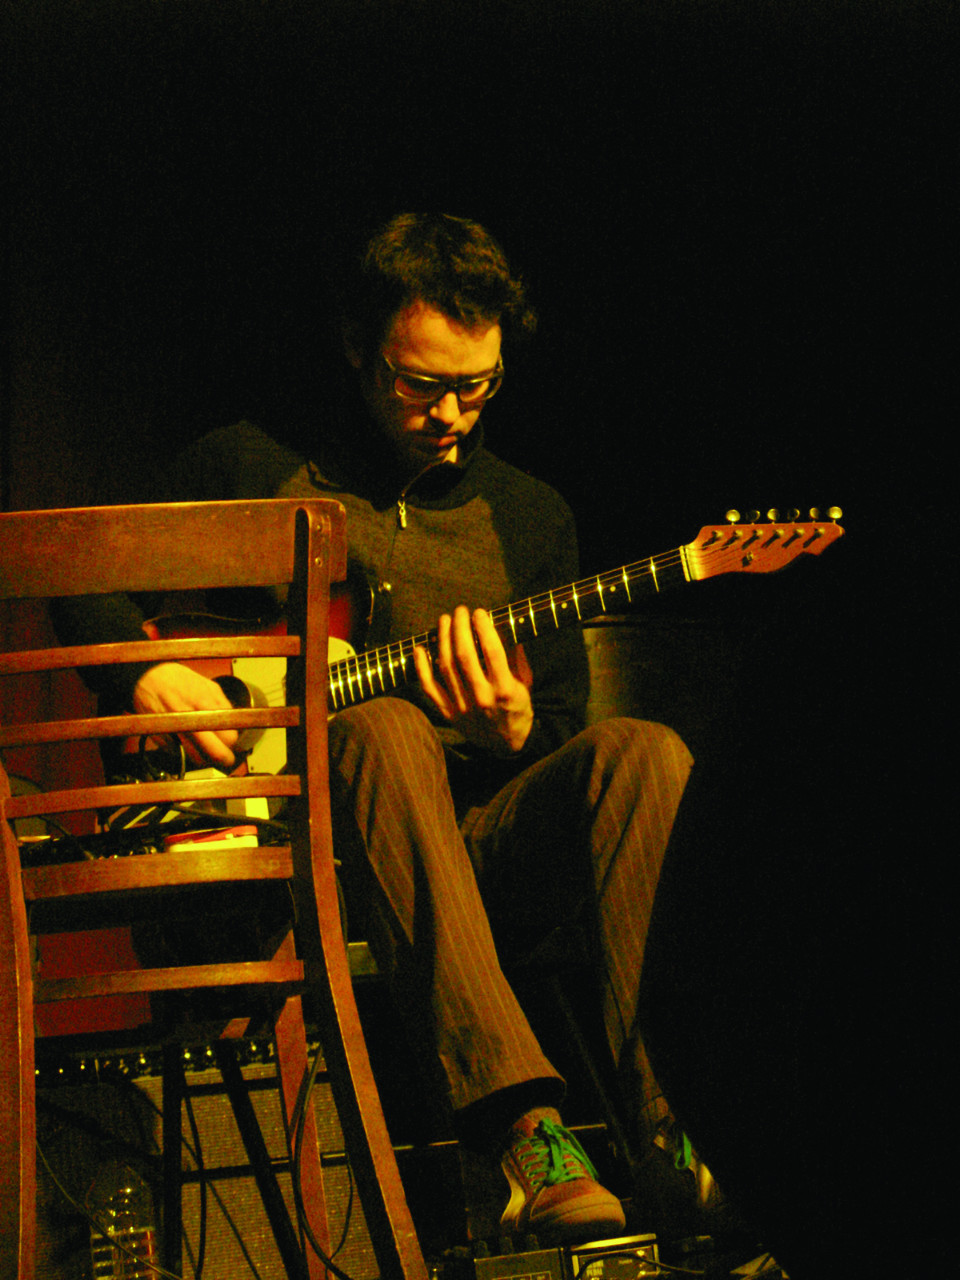 Antoine Berthiaume in concert at La Sala Rossa during the Ça frappe event, by Productions SuperMusique [Photograph: Céline Côté, Montréal (Québec), March 25, 2009]